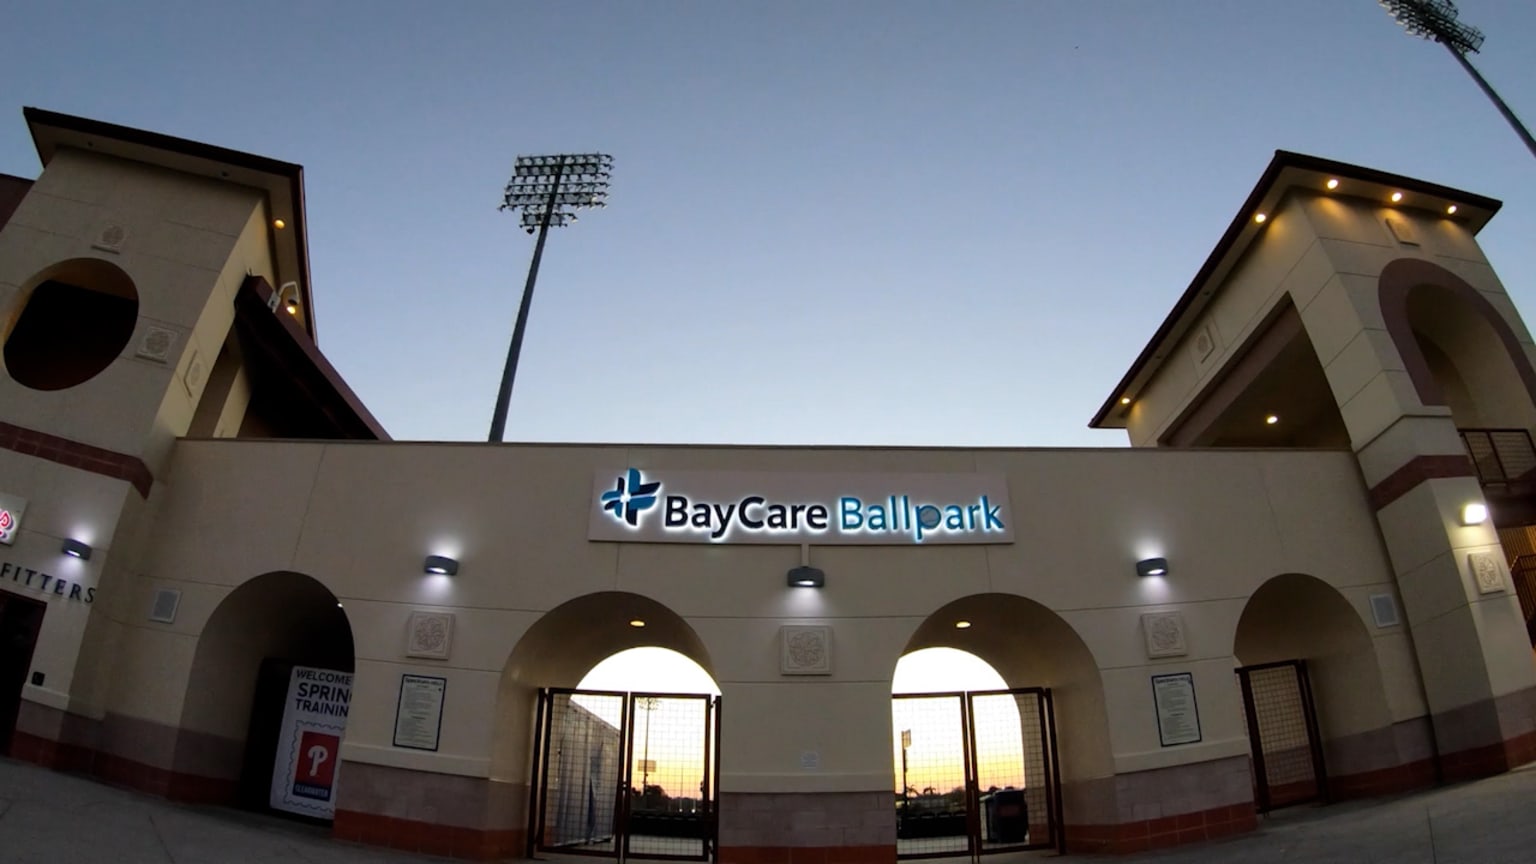 BayCare Ballpark signage goes up, 02/26/2021